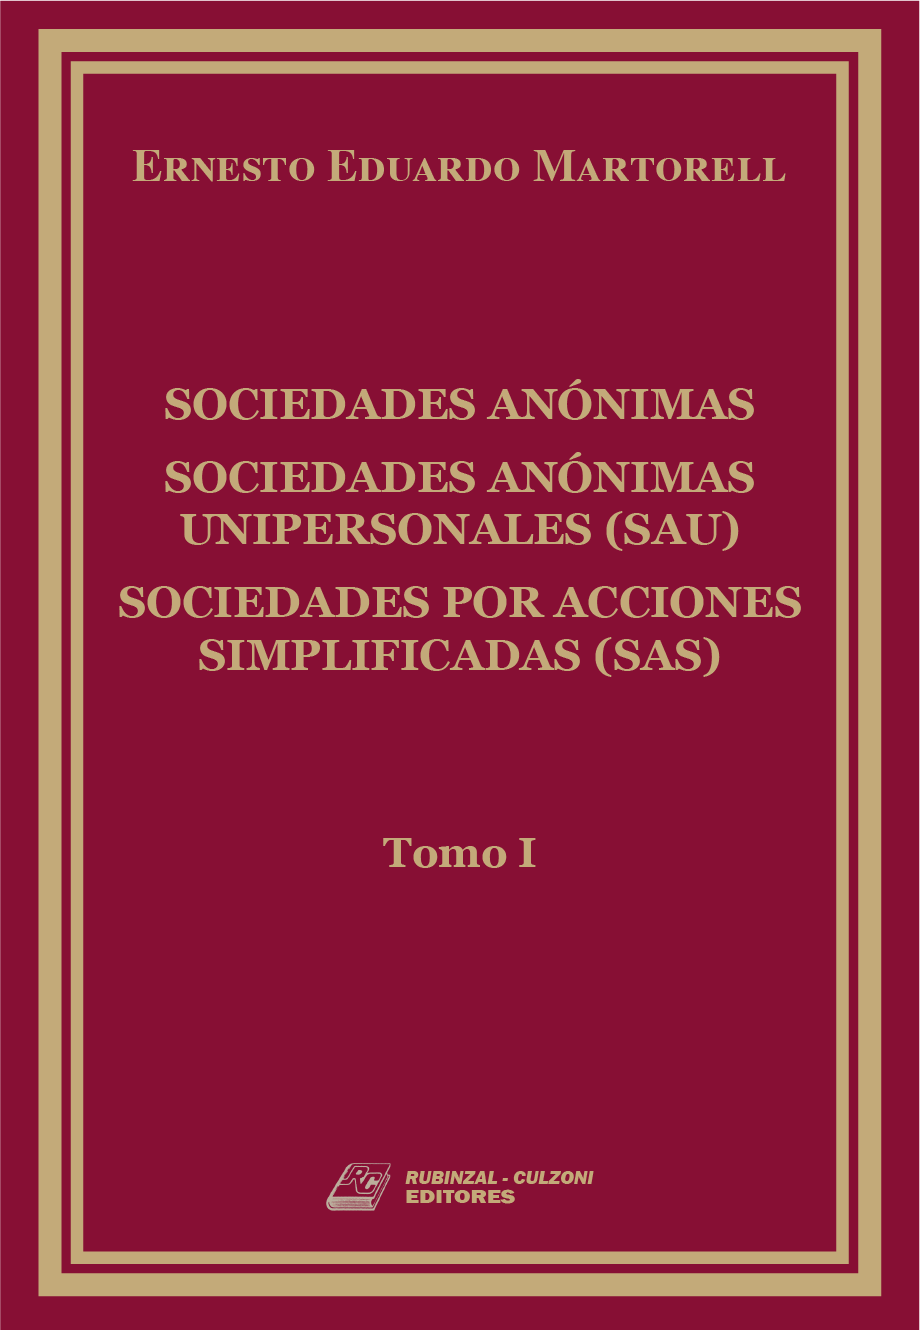 Sociedades Anónimas, Sociedades Anónimas Unipersonales (SAU), Sociedades por Acciones Simplificadas (SAS) - Tomo 1